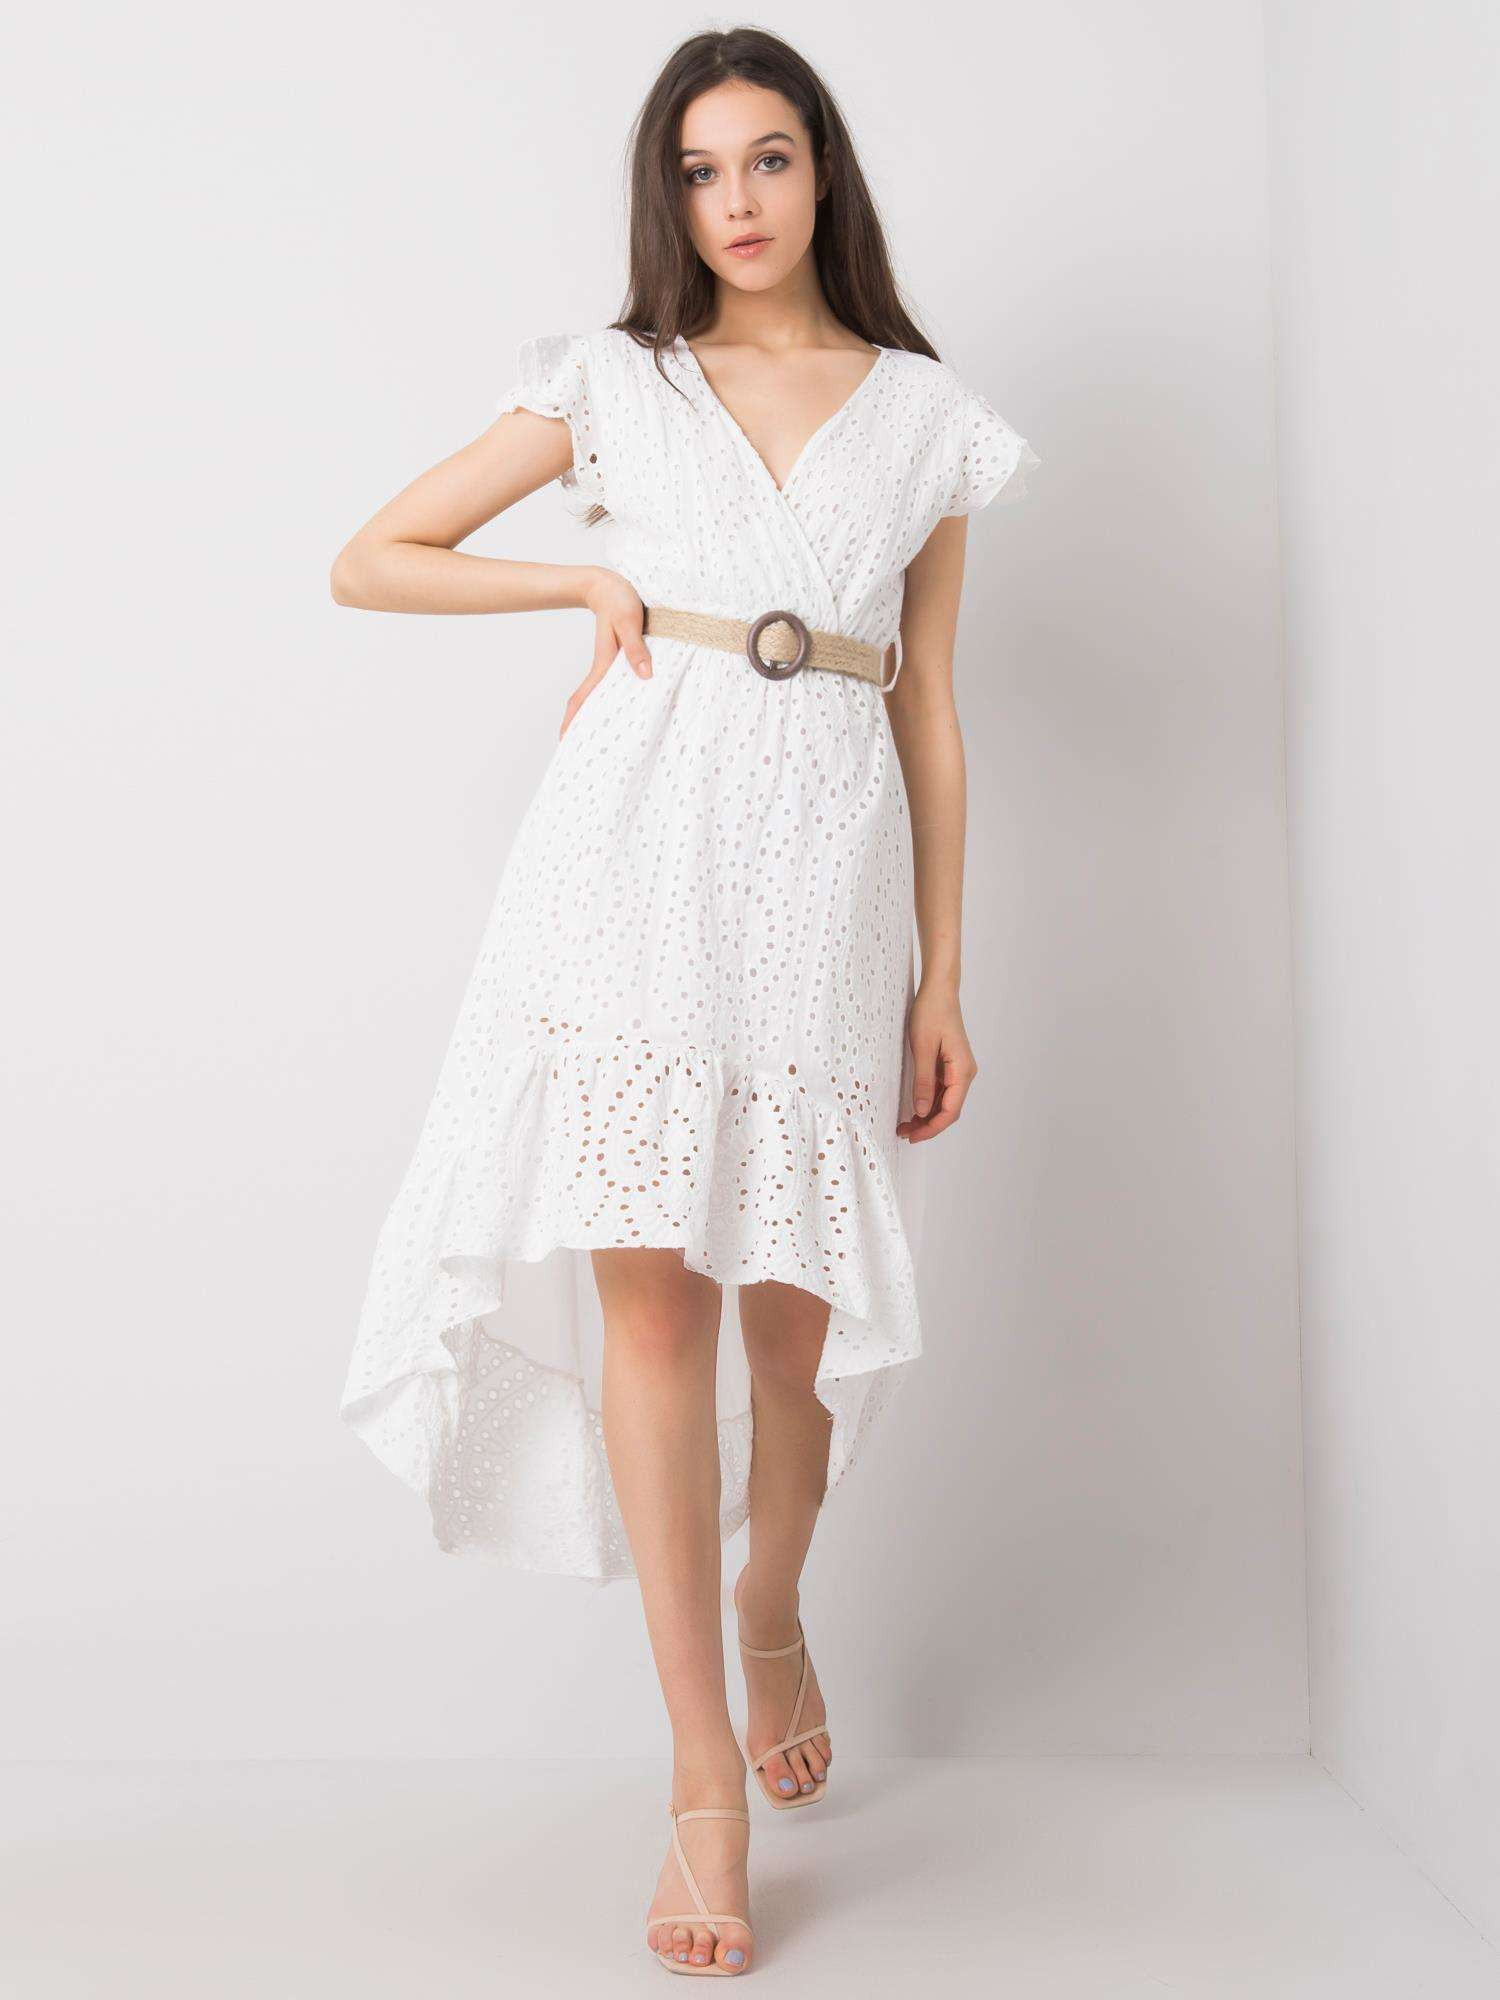 Dámské šaty TW SK BI model 18257791 bílé bílá XL - FPrice